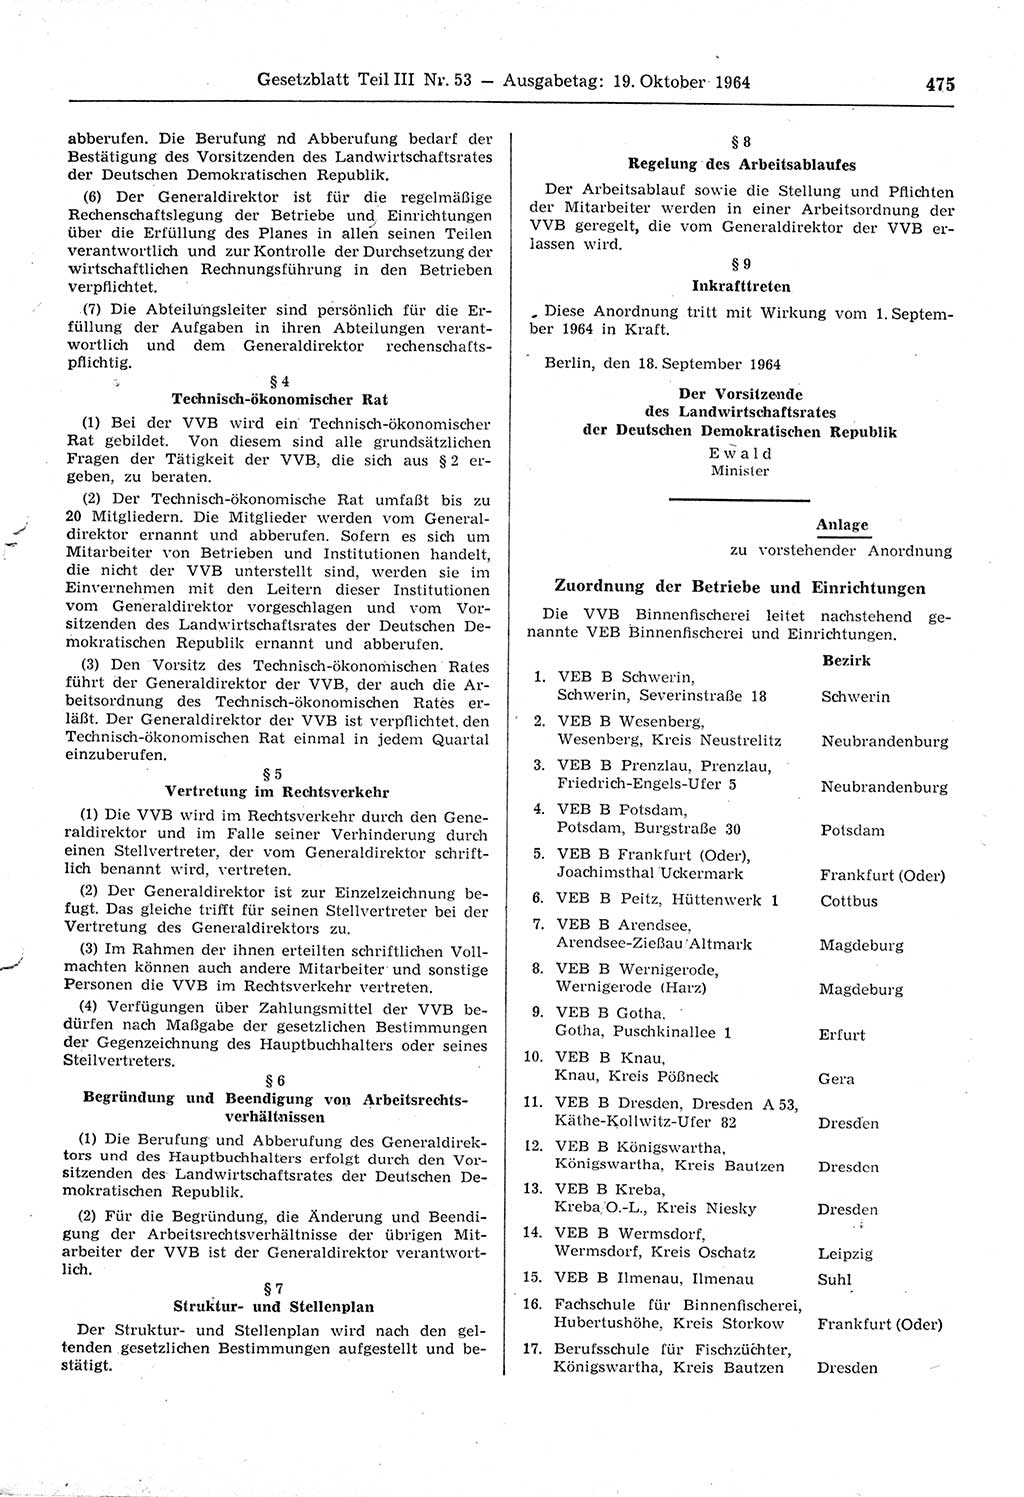 Gesetzblatt (GBl.) der Deutschen Demokratischen Republik (DDR) Teil ⅠⅠⅠ 1964, Seite 475 (GBl. DDR ⅠⅠⅠ 1964, S. 475)